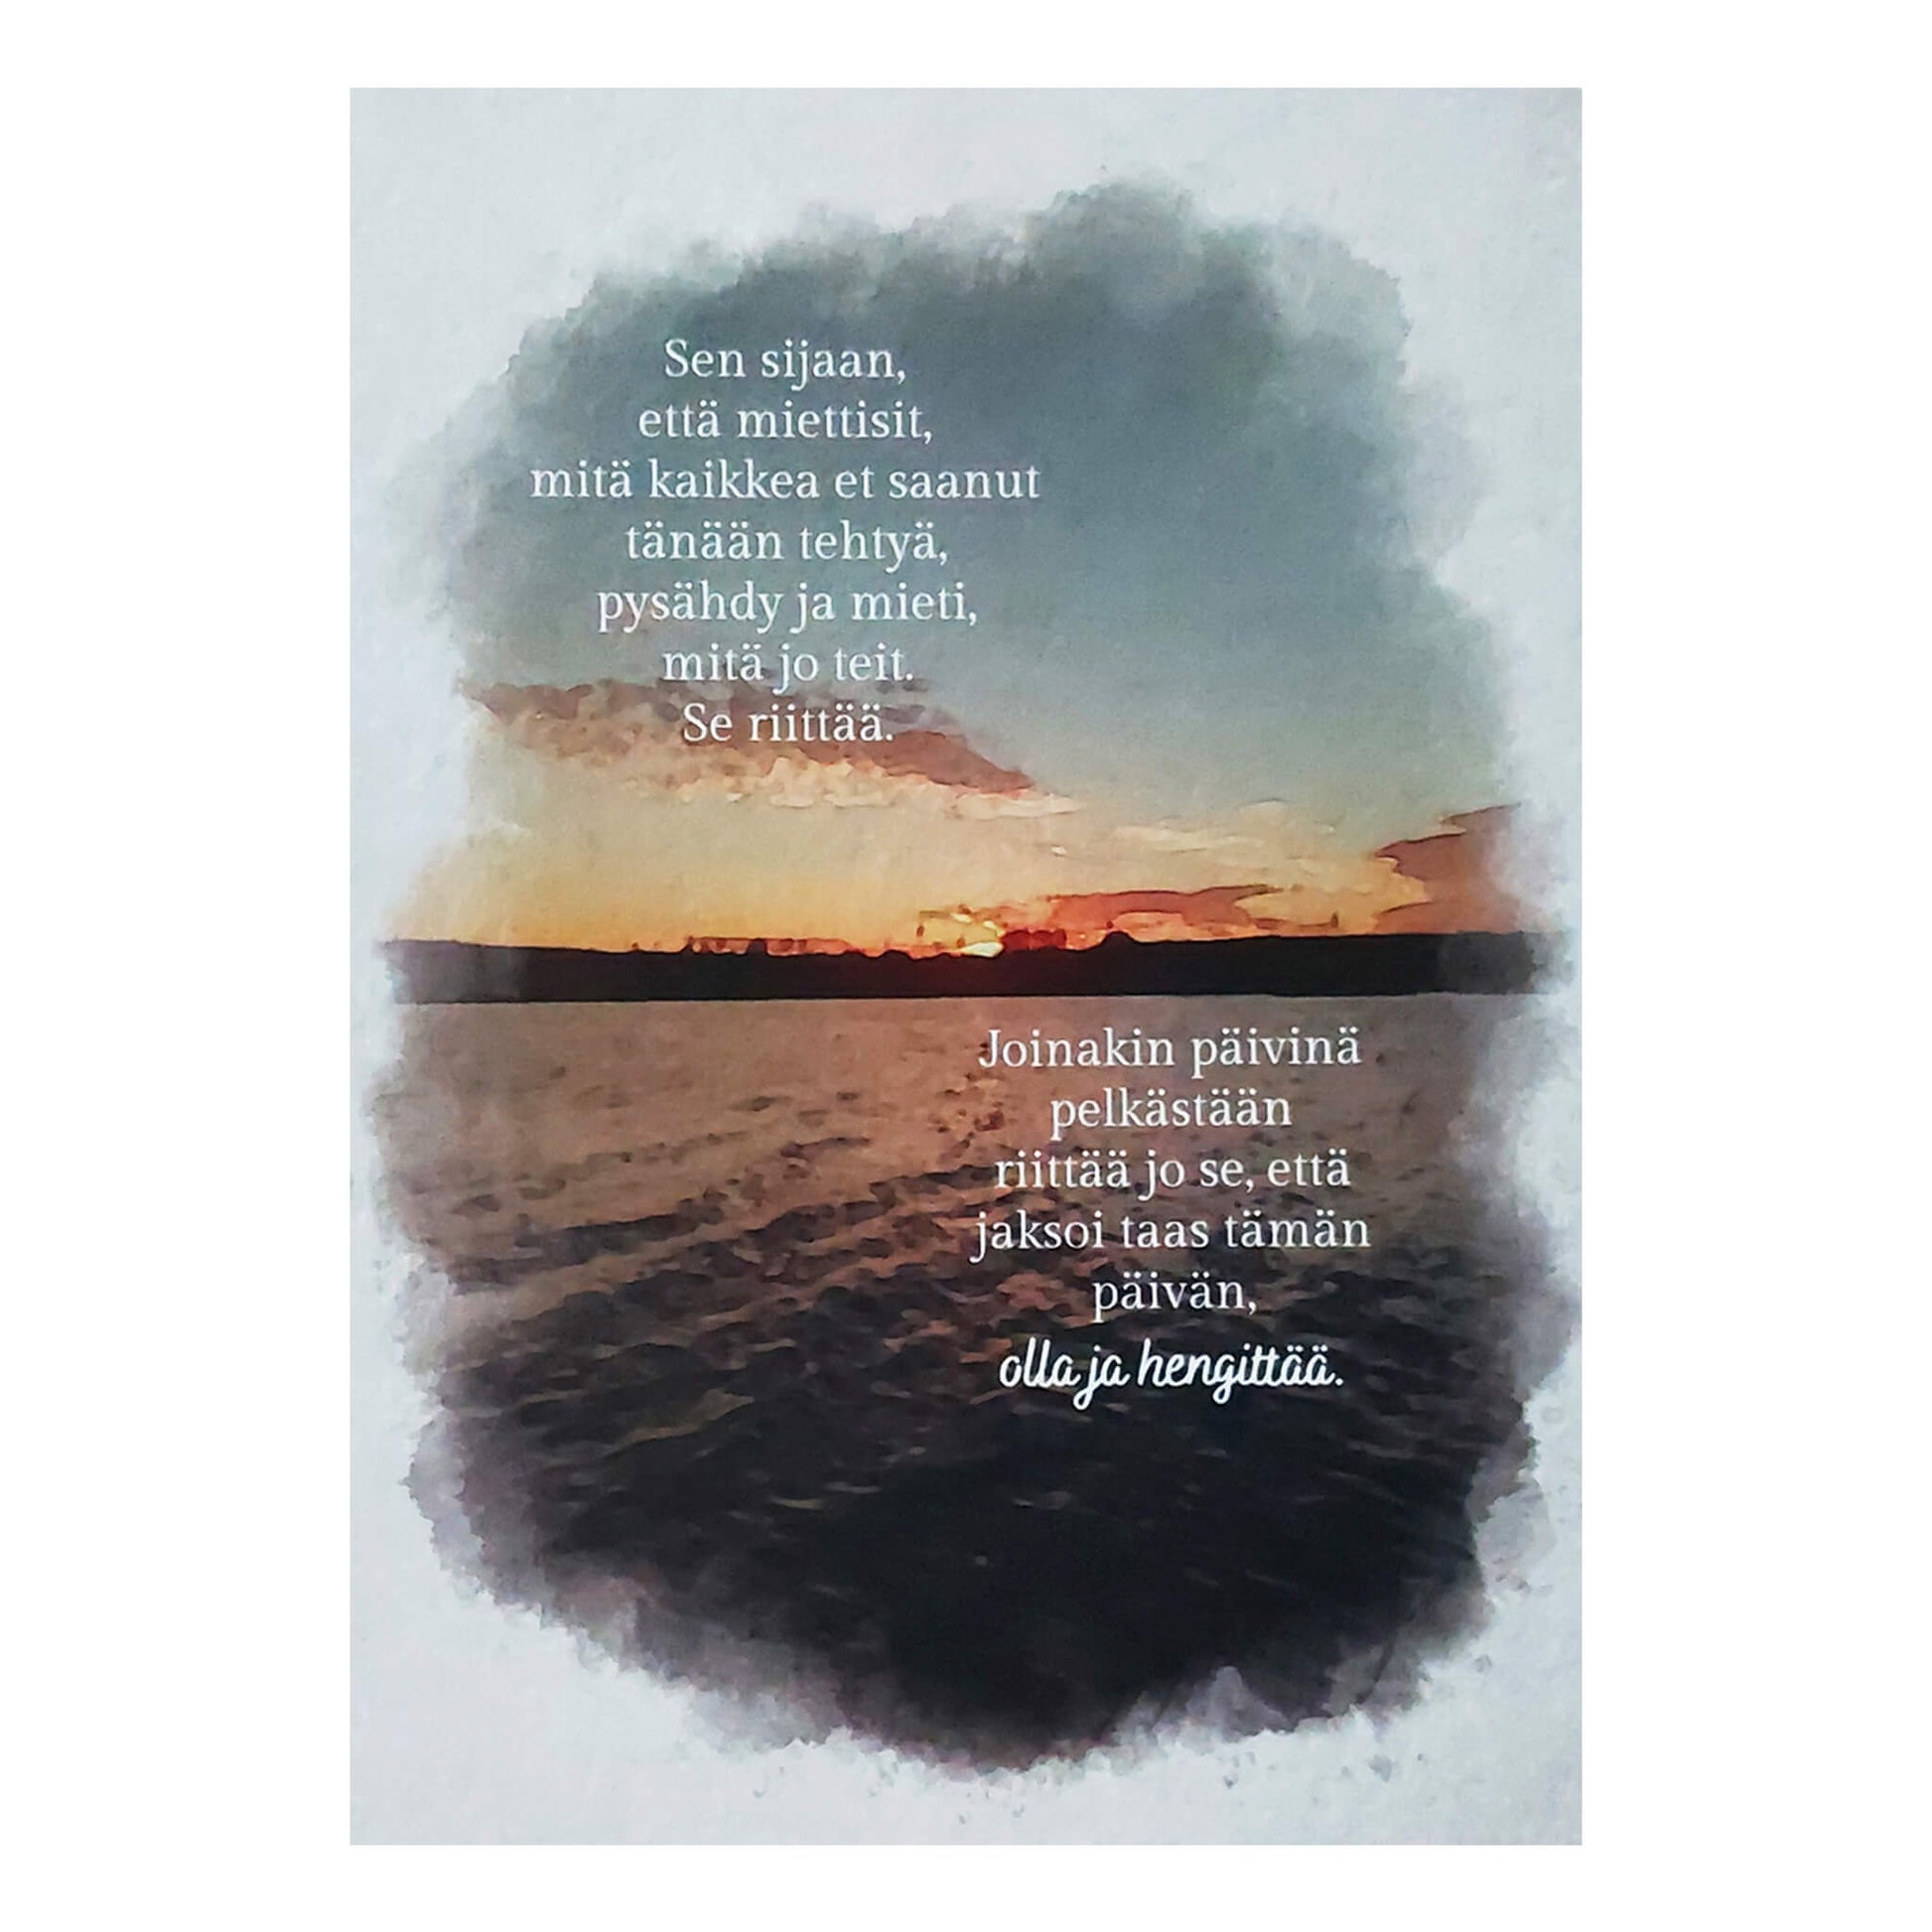 Postikortti jossa on järvimaisema ja auringonlasku. Kortissa on runo.